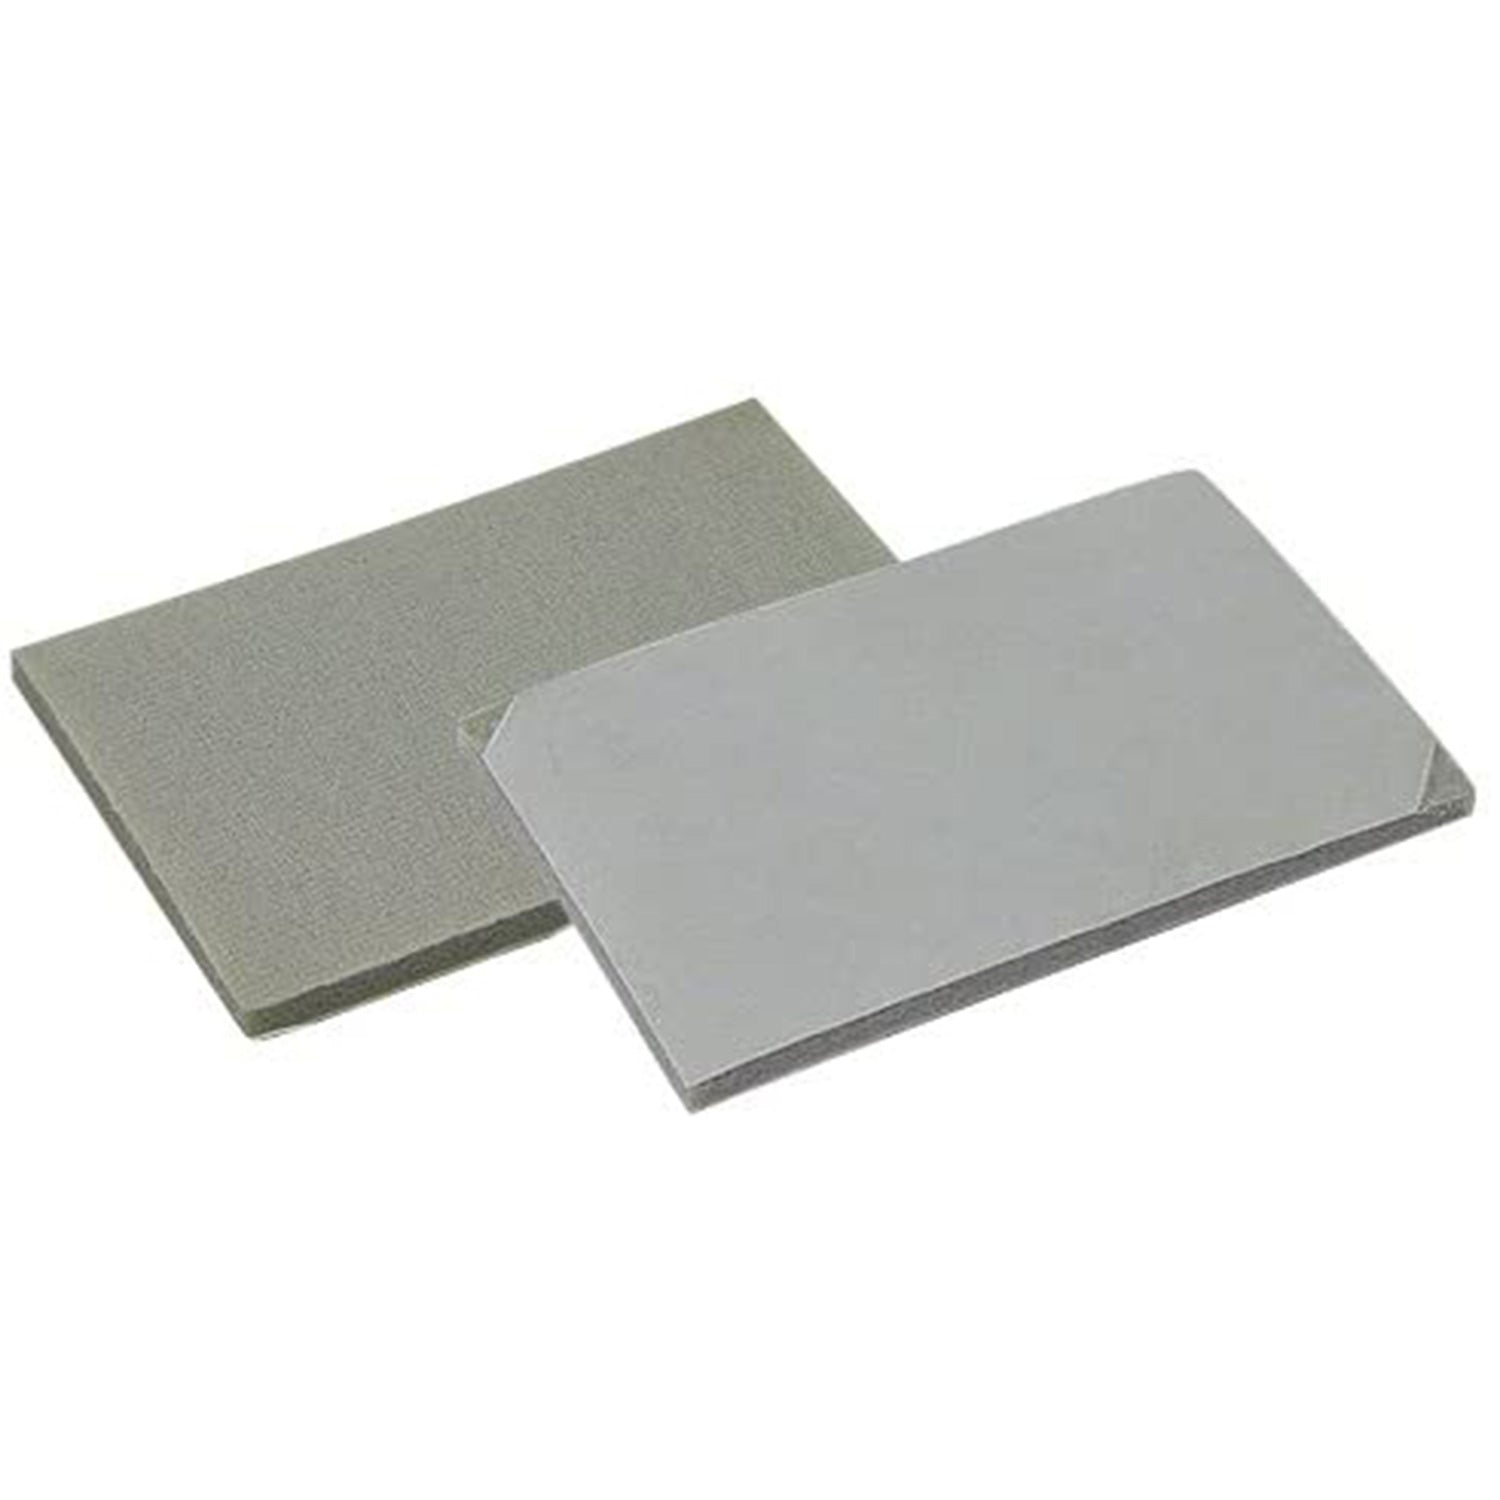 assilex-interface-sheet-pads-medium